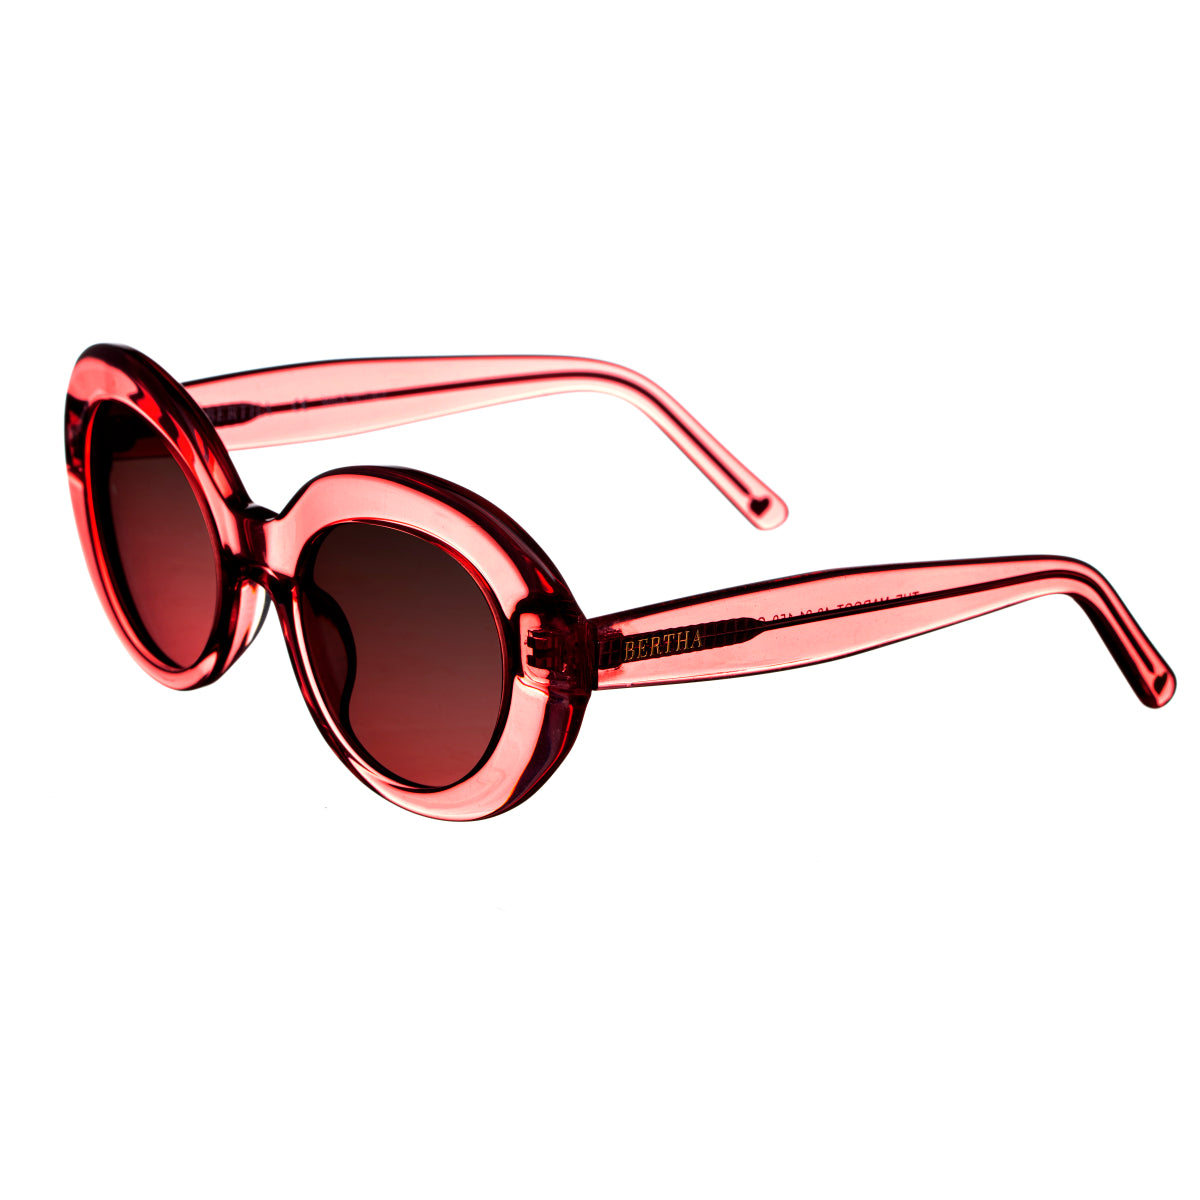 Bertha Margot Handmade in Italy Sunglasses - Red - BRSIT102-3